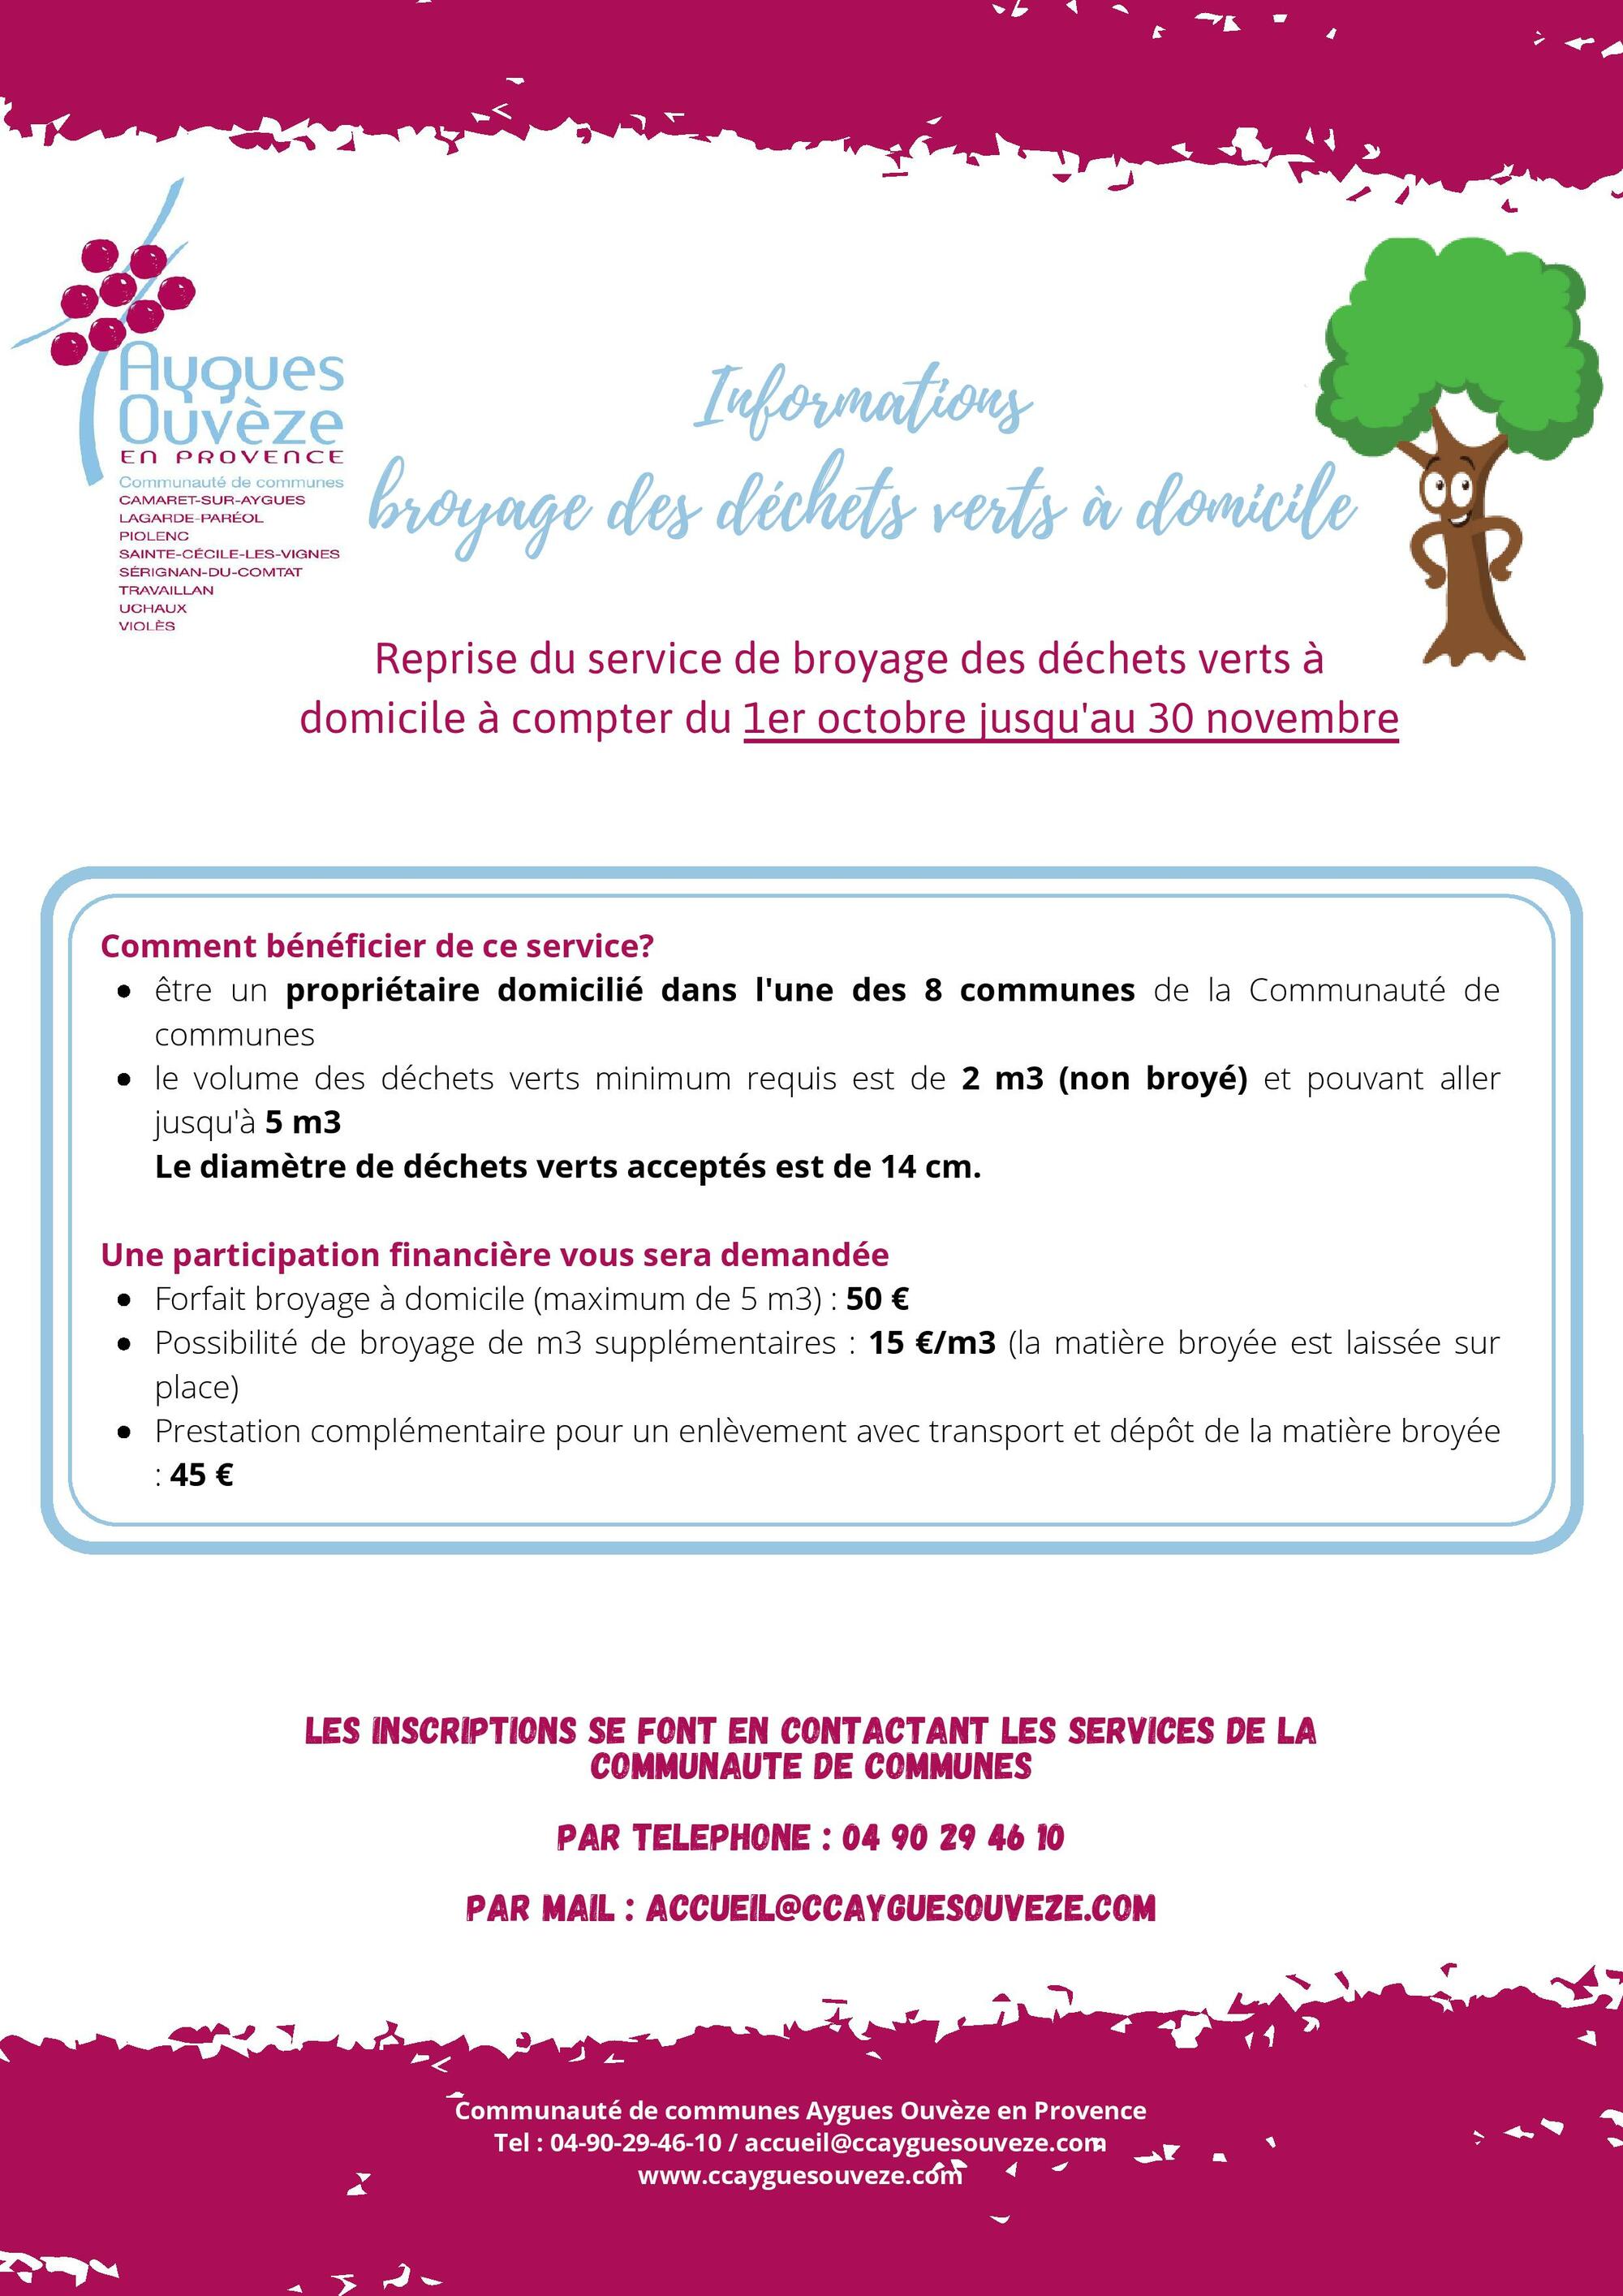 Informations de la Communauté de communes Aygues Ouvèze en Provence : broyage des déchets verts à domicile